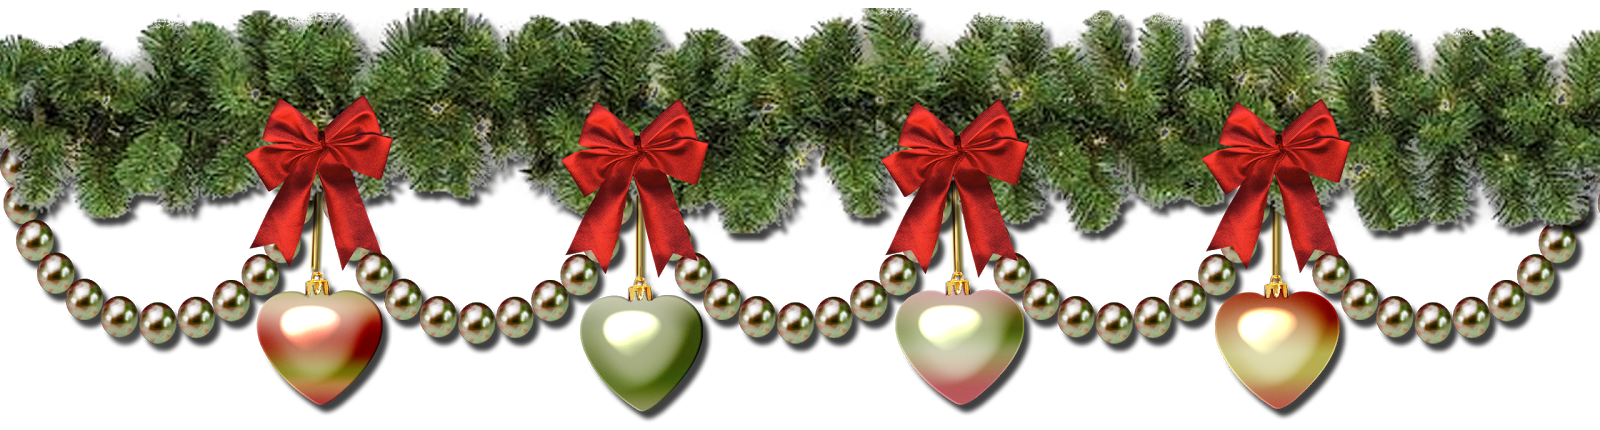 Archivo de imagen PNG de guirnaldas de Navidad